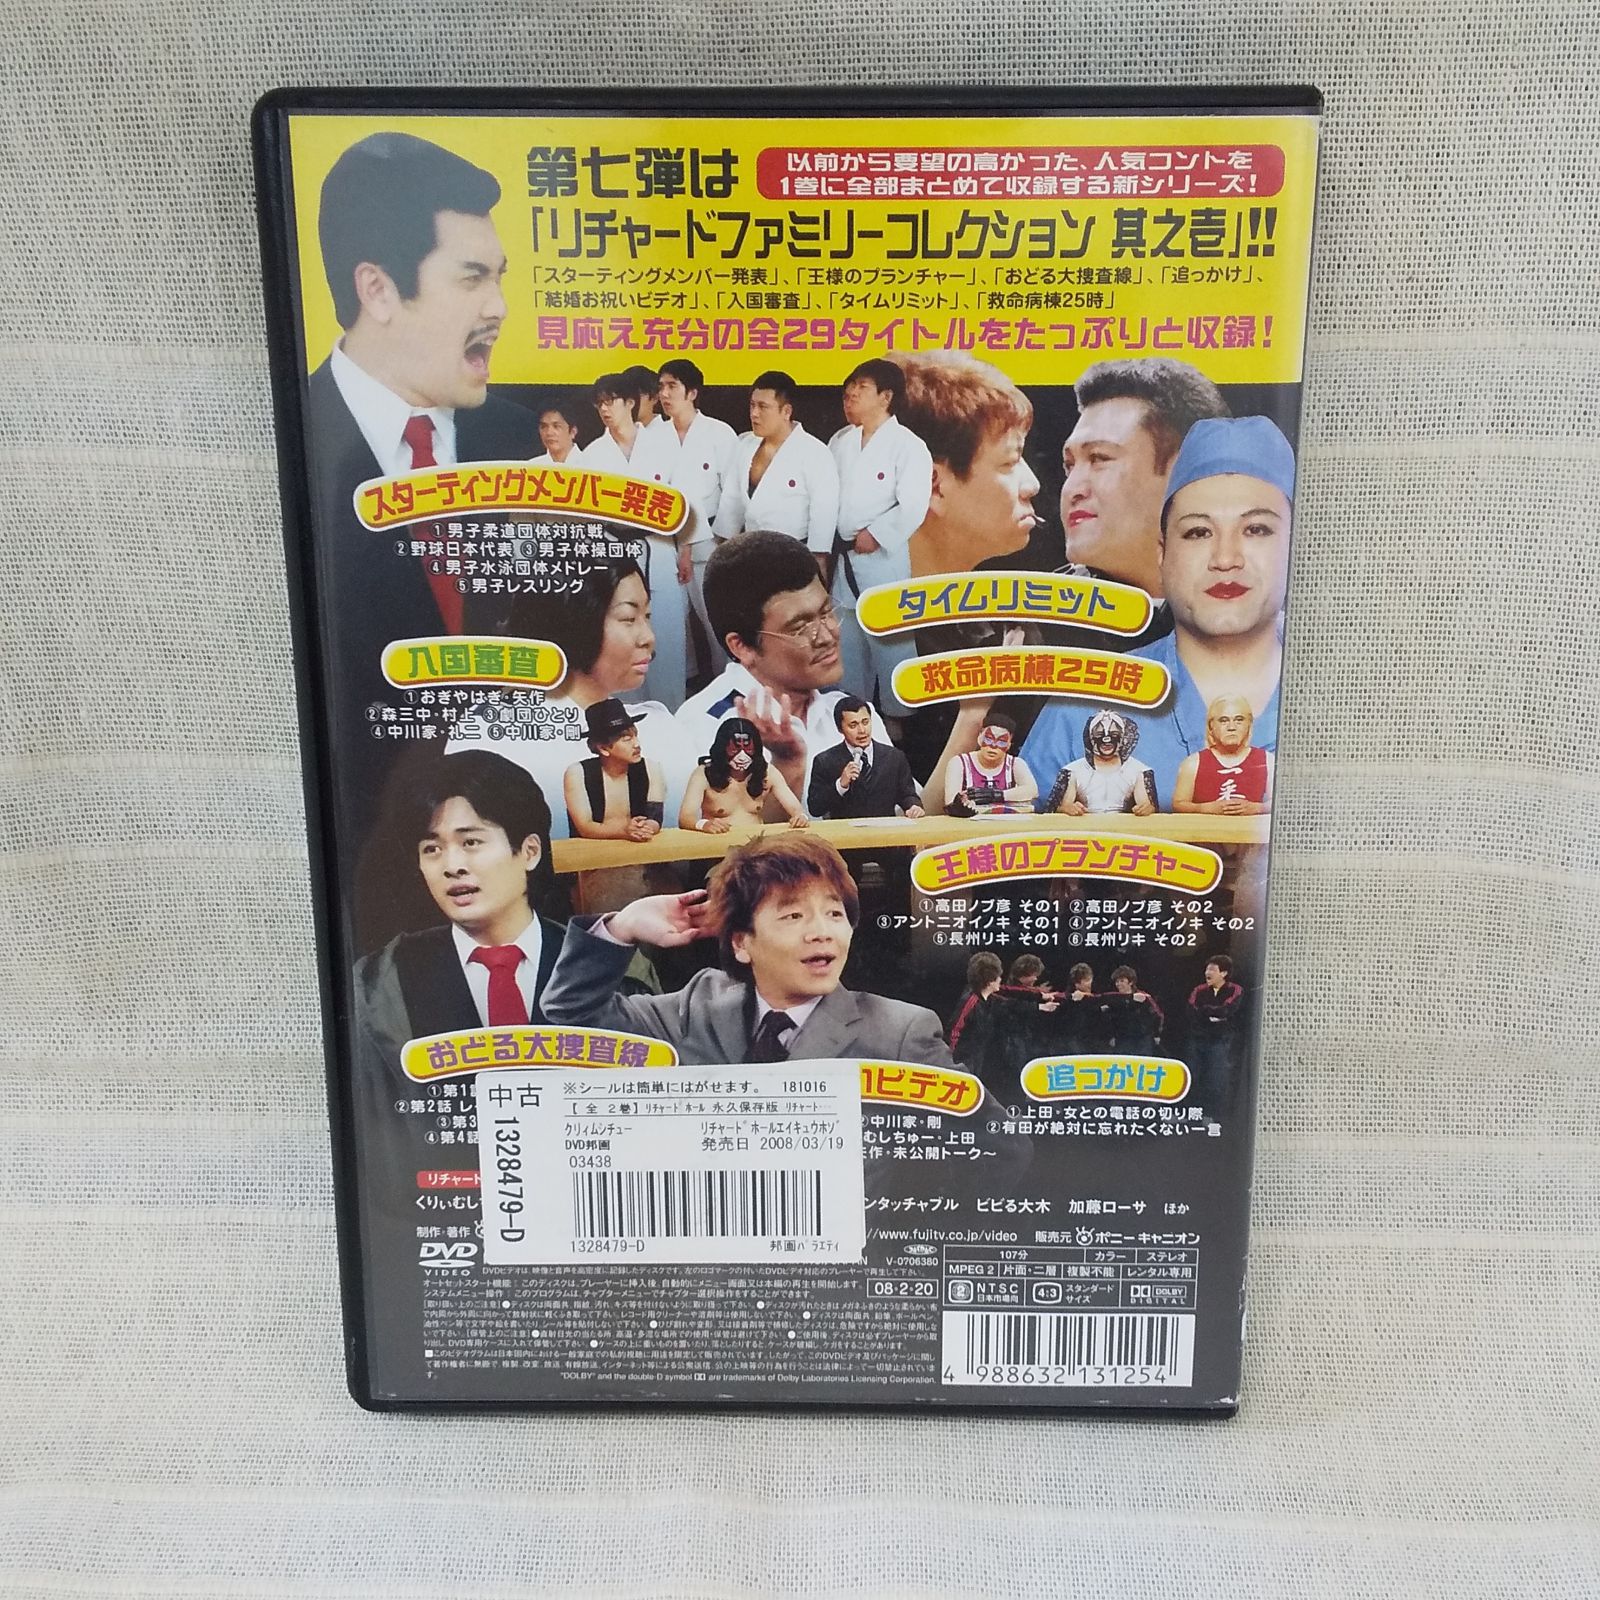 リチャードホール リチャードファミリーコレクション 其之壱 レンタル専用 中古 DVD ケース付き - メルカリ